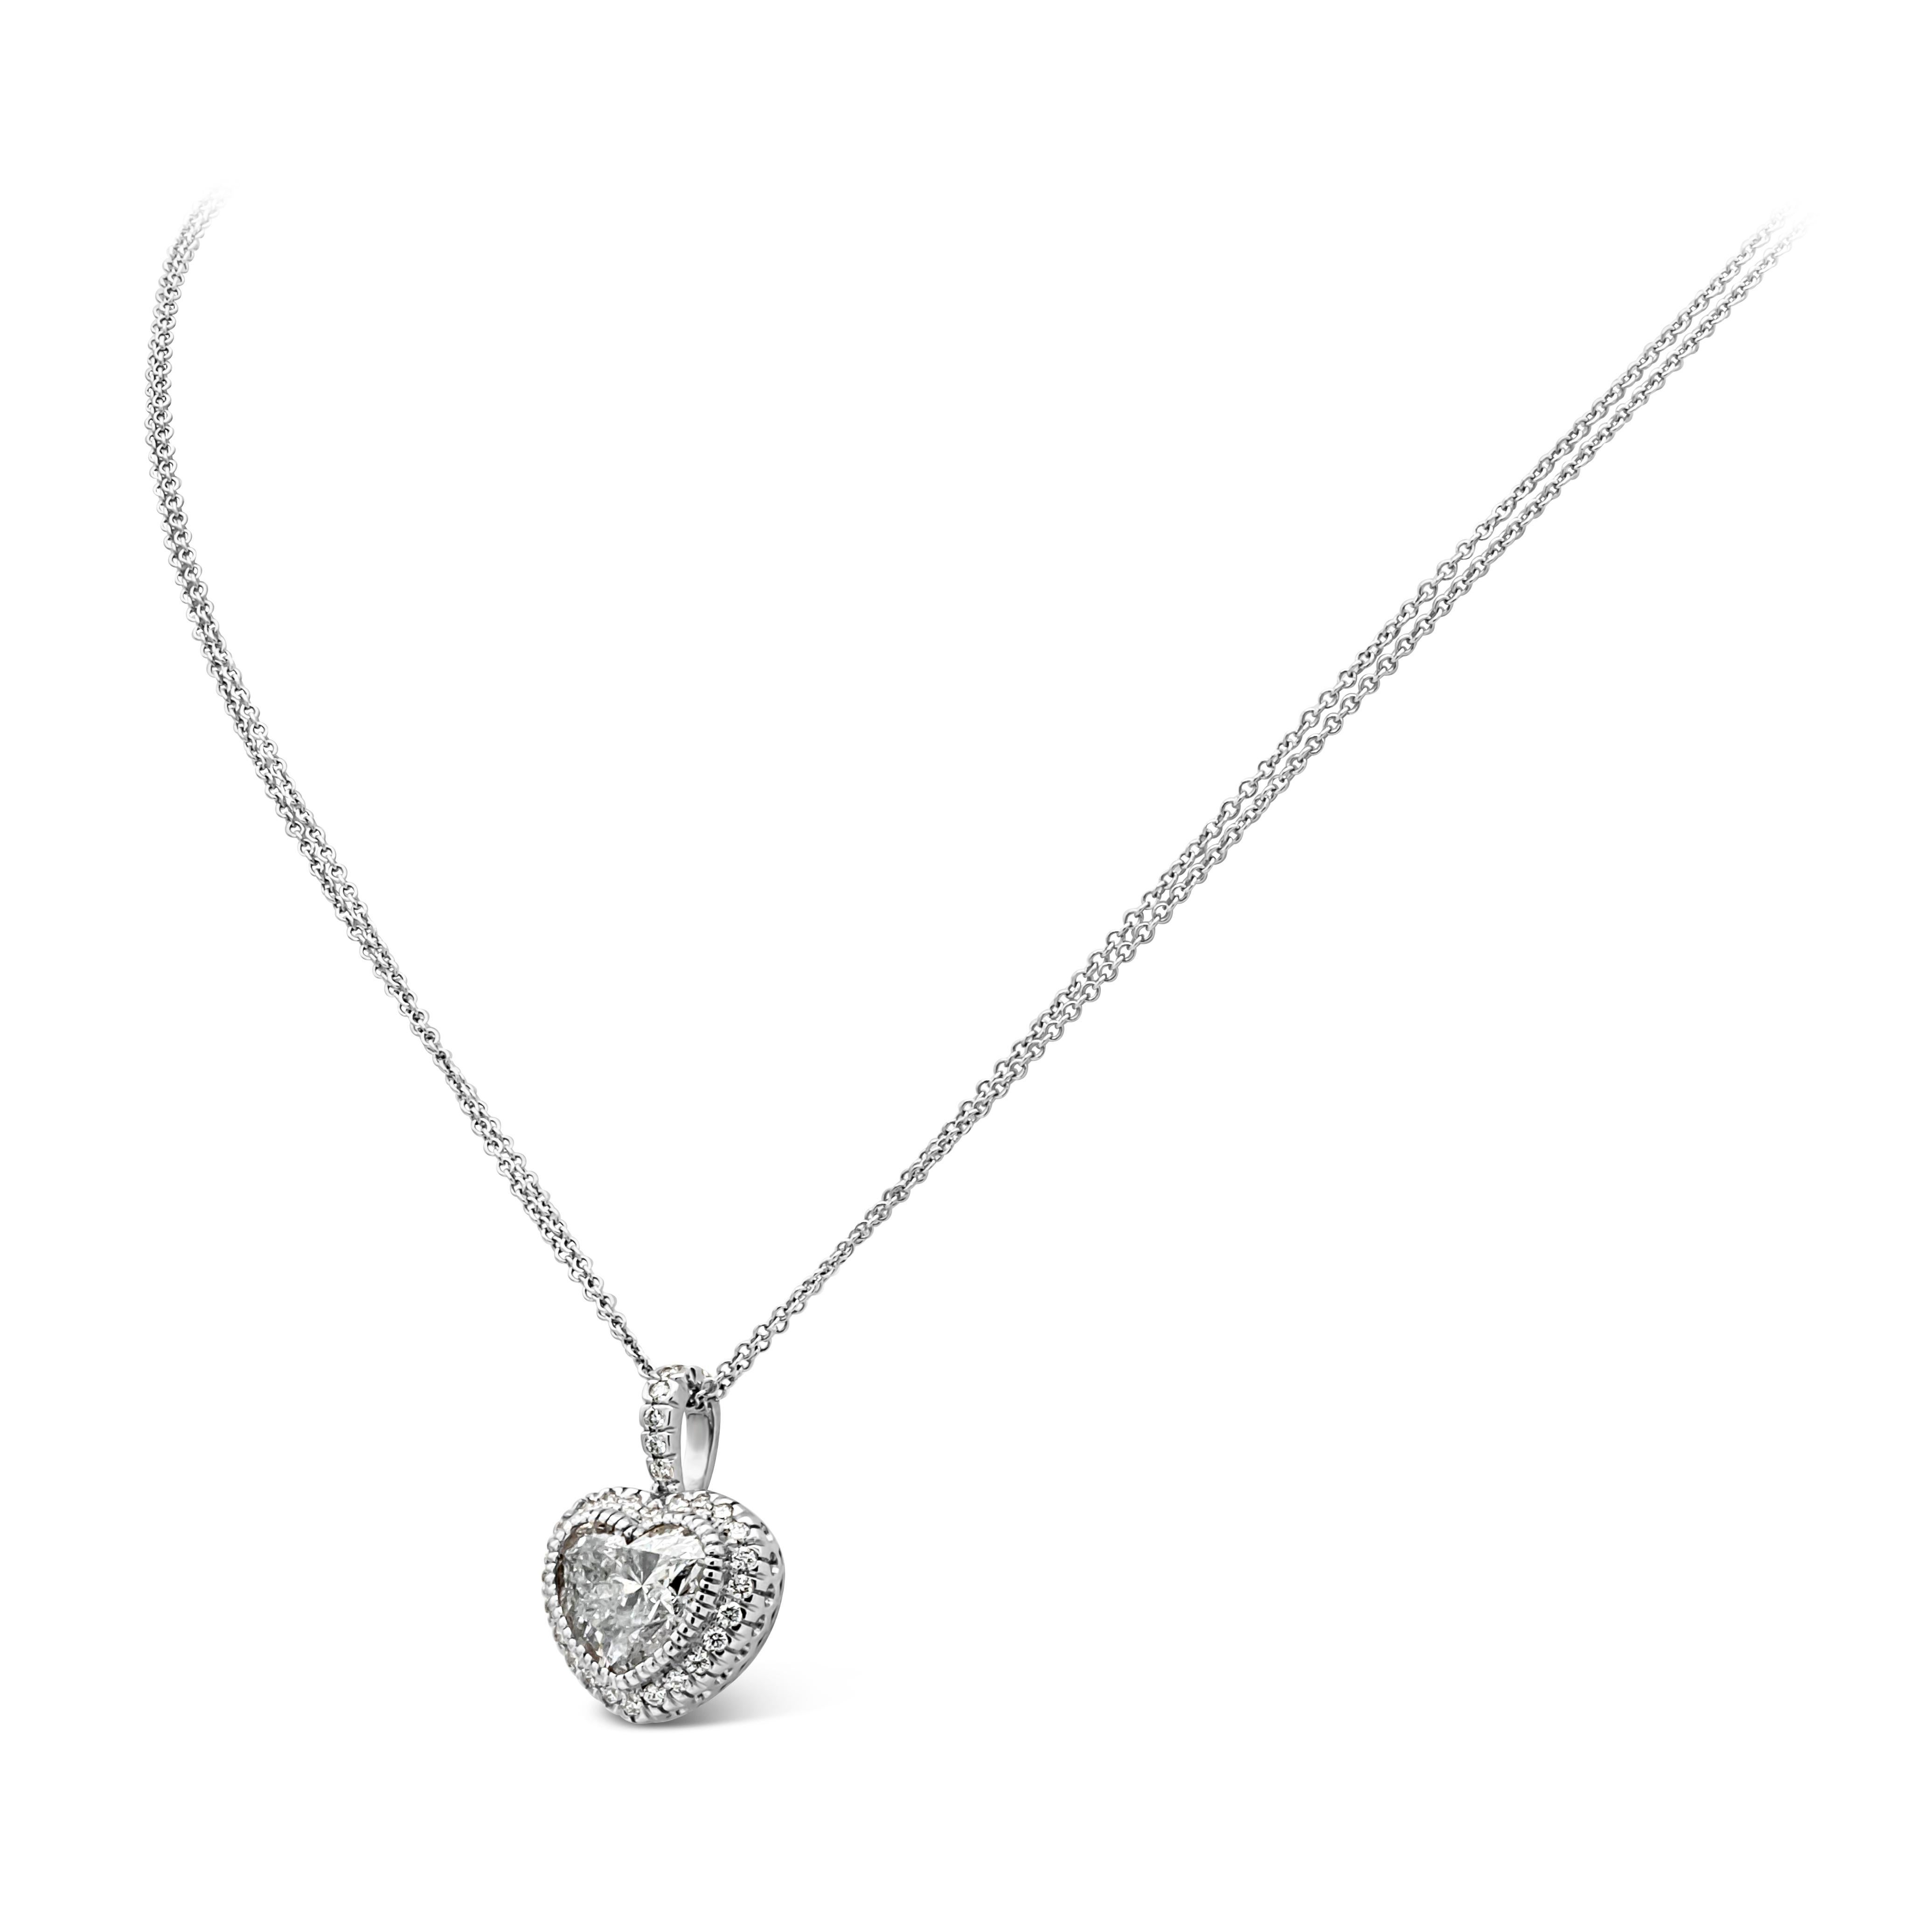 Un magnifique collier pendentif polyvalent mettant en valeur un diamant en forme de cœur de 3,05 carats, de couleur E et de pureté I2 au centre. Entourée d'une rangée de diamants ronds brillants dans un design en halo pesant 0,31 carats au total, et